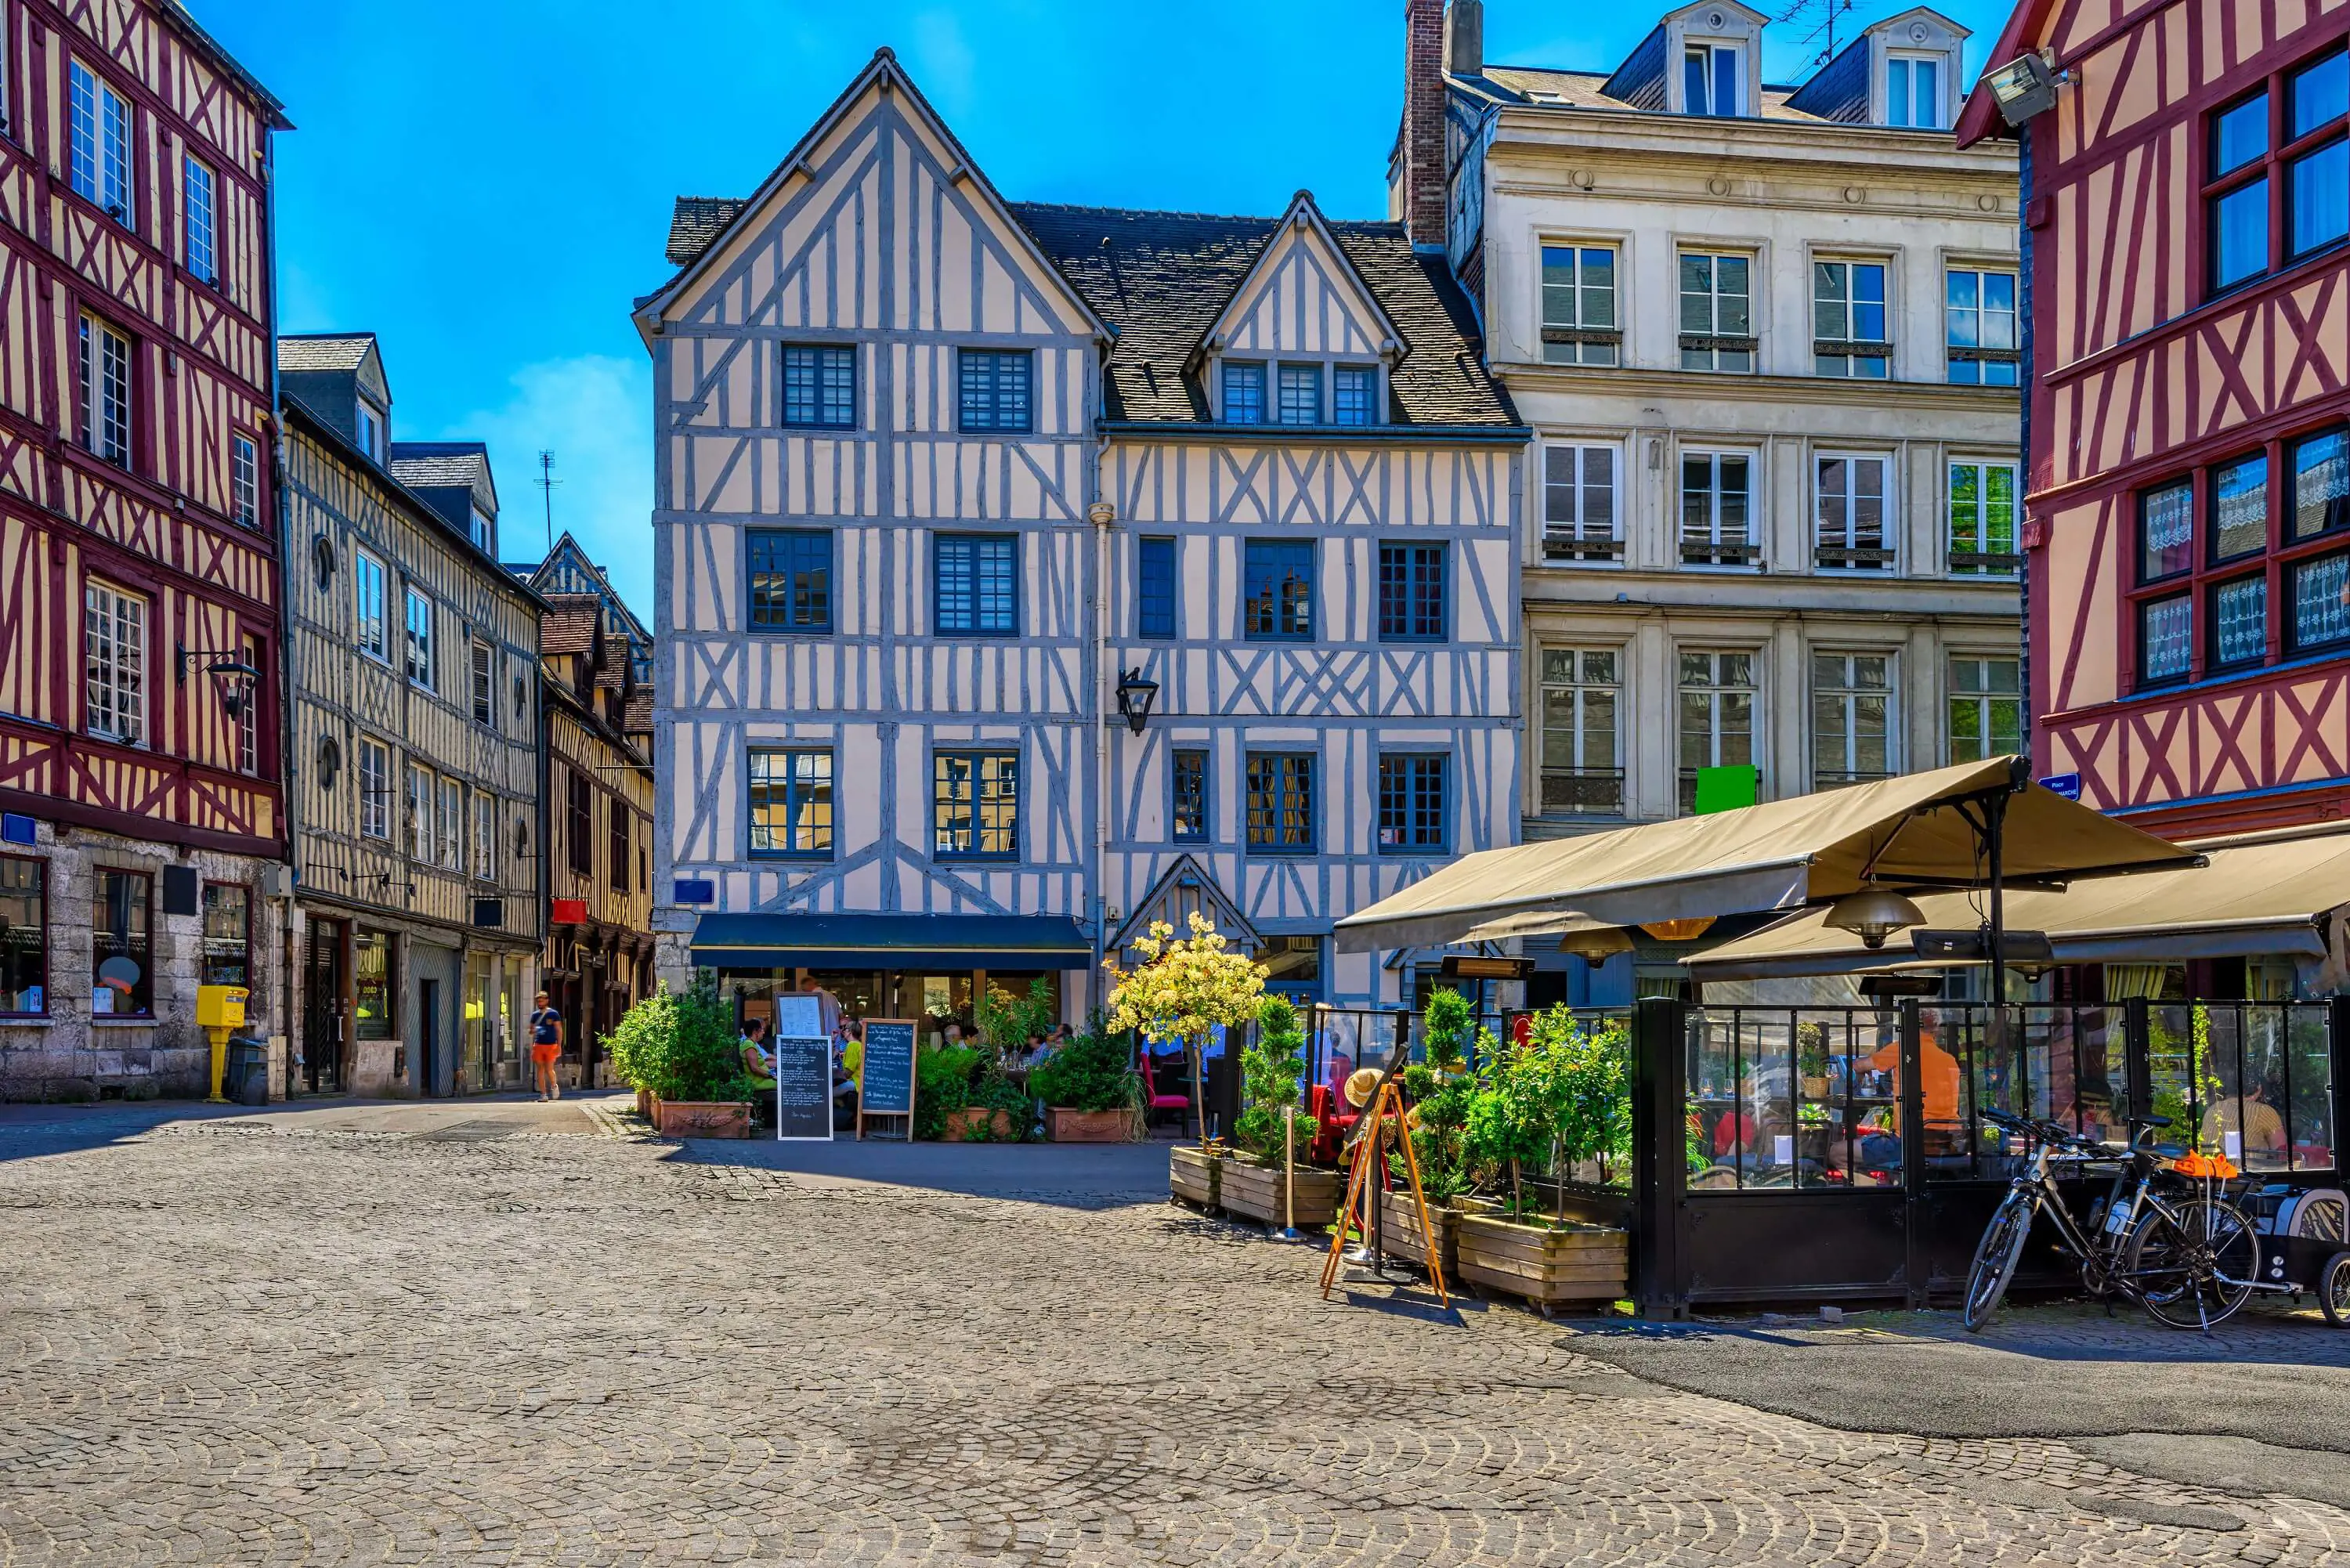 Normandy - Street Buildings